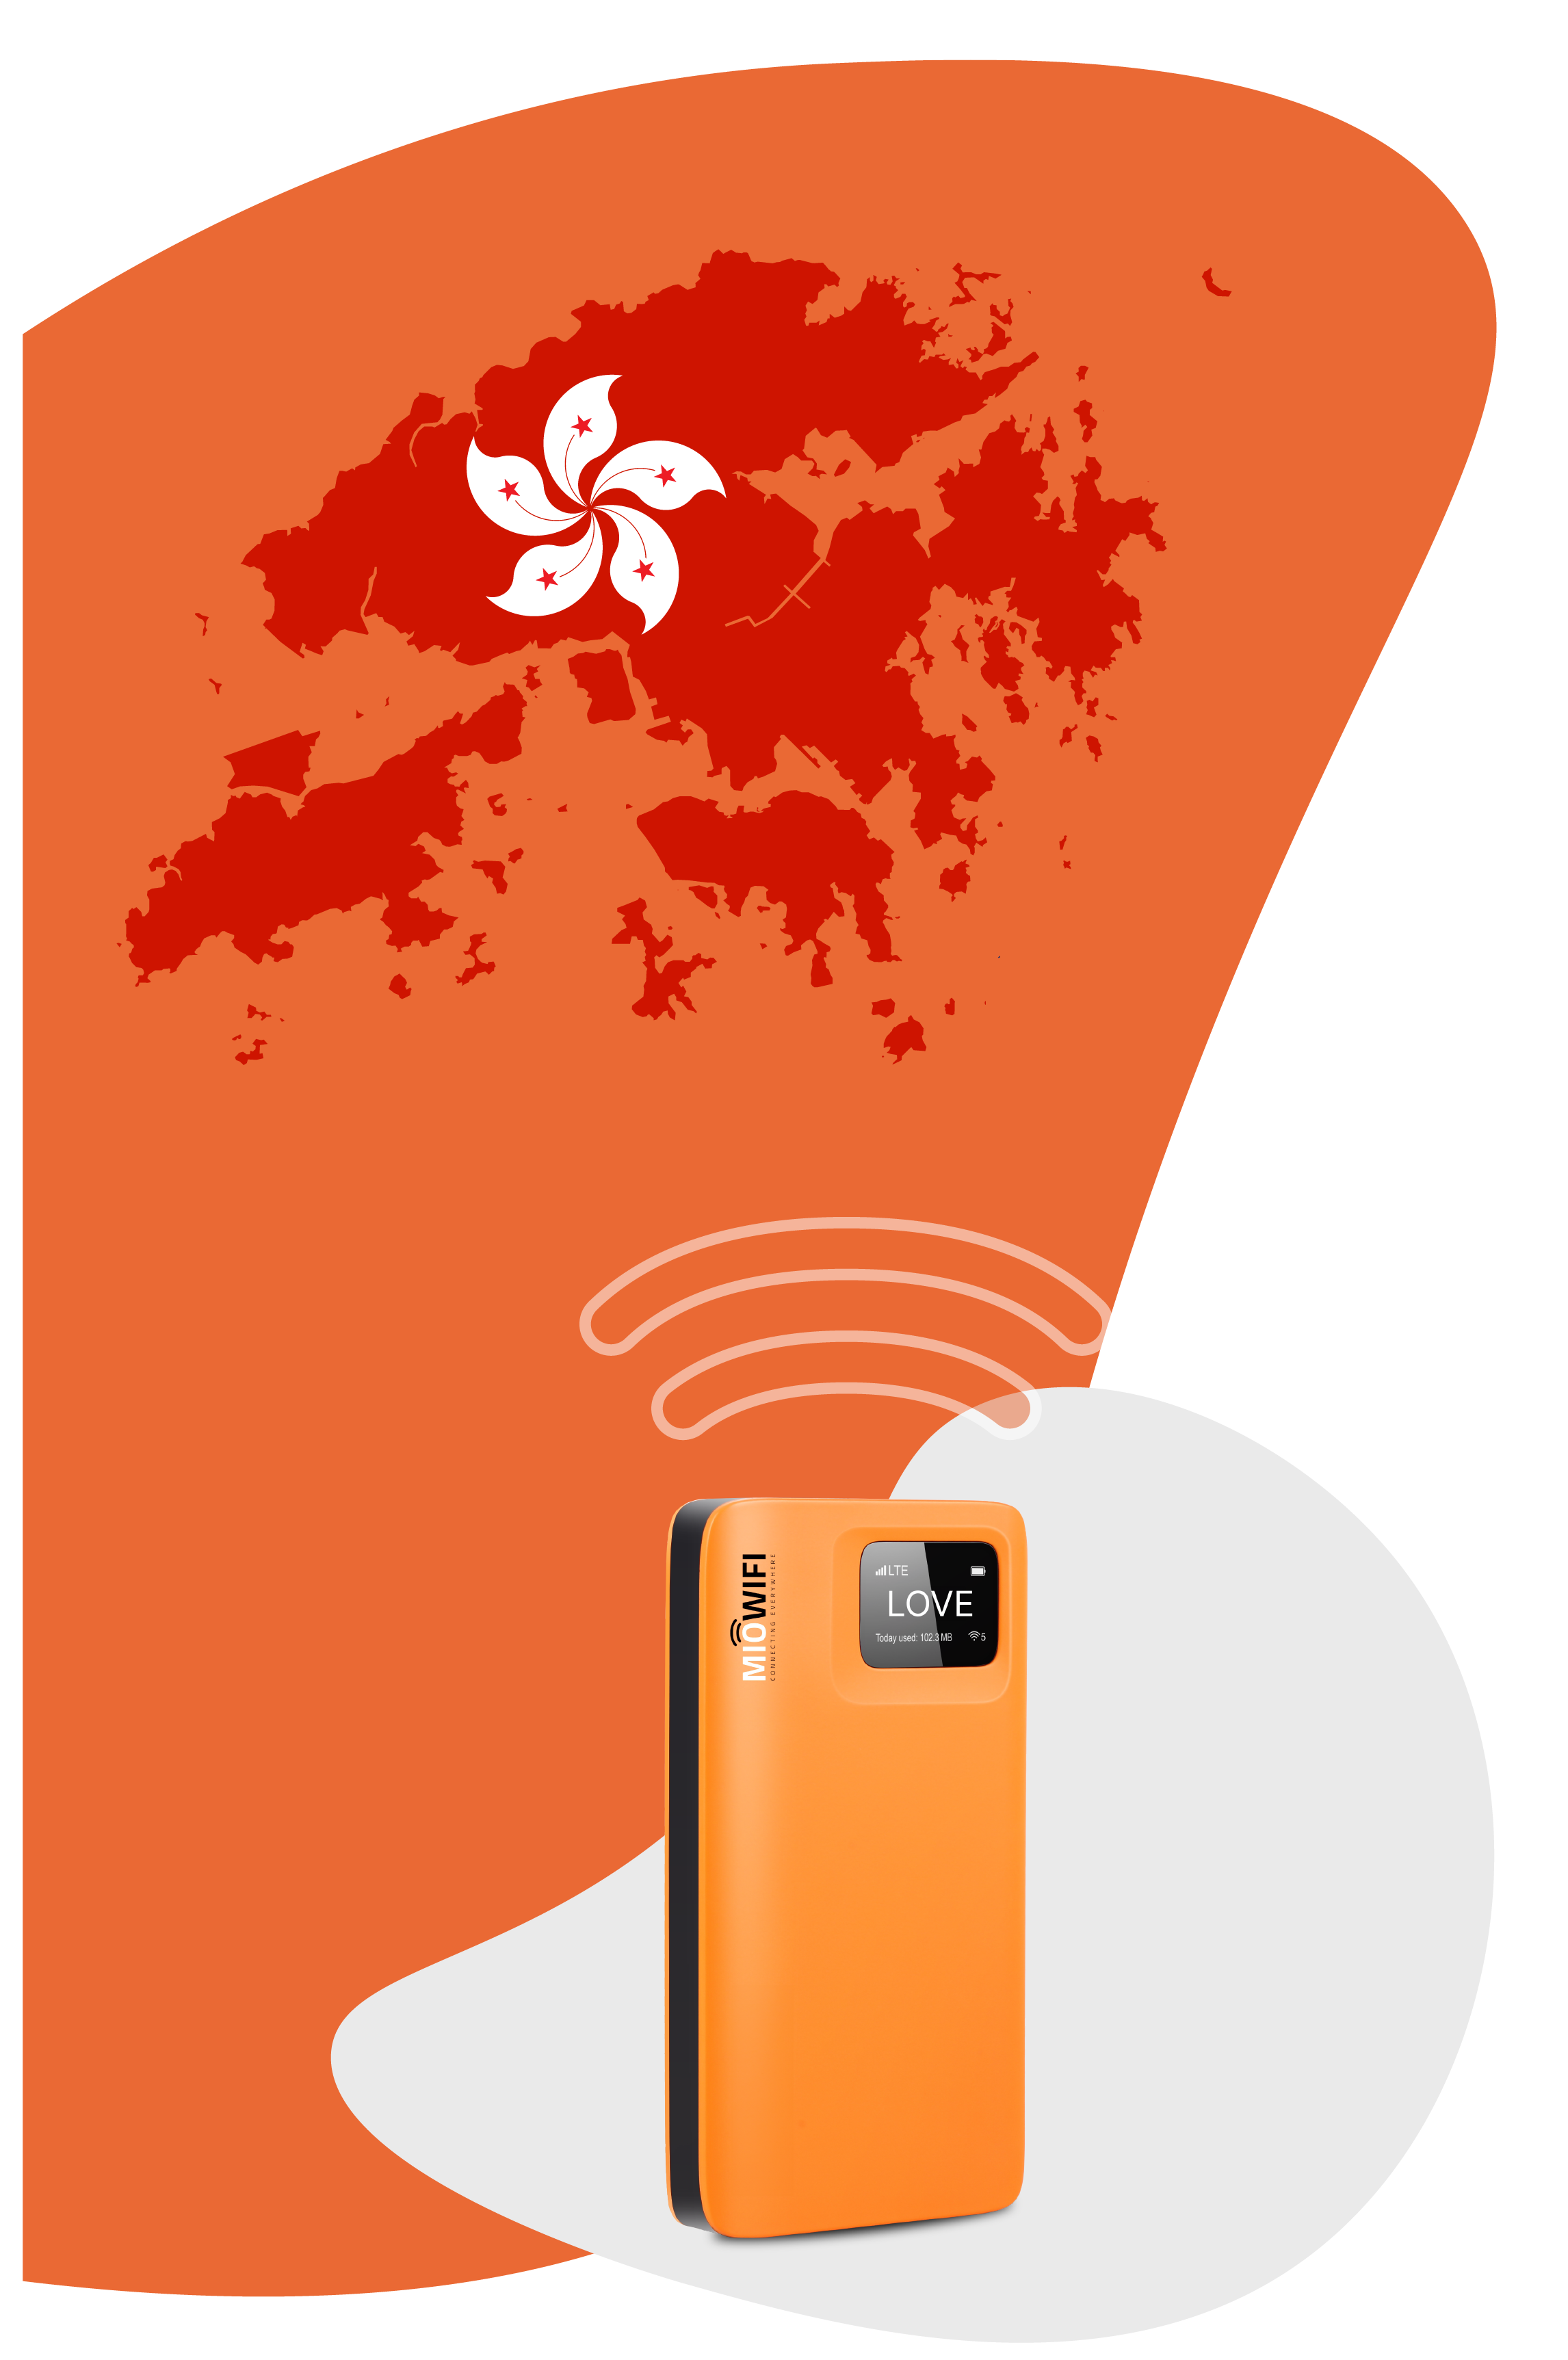  Portable Internet China.HongKong